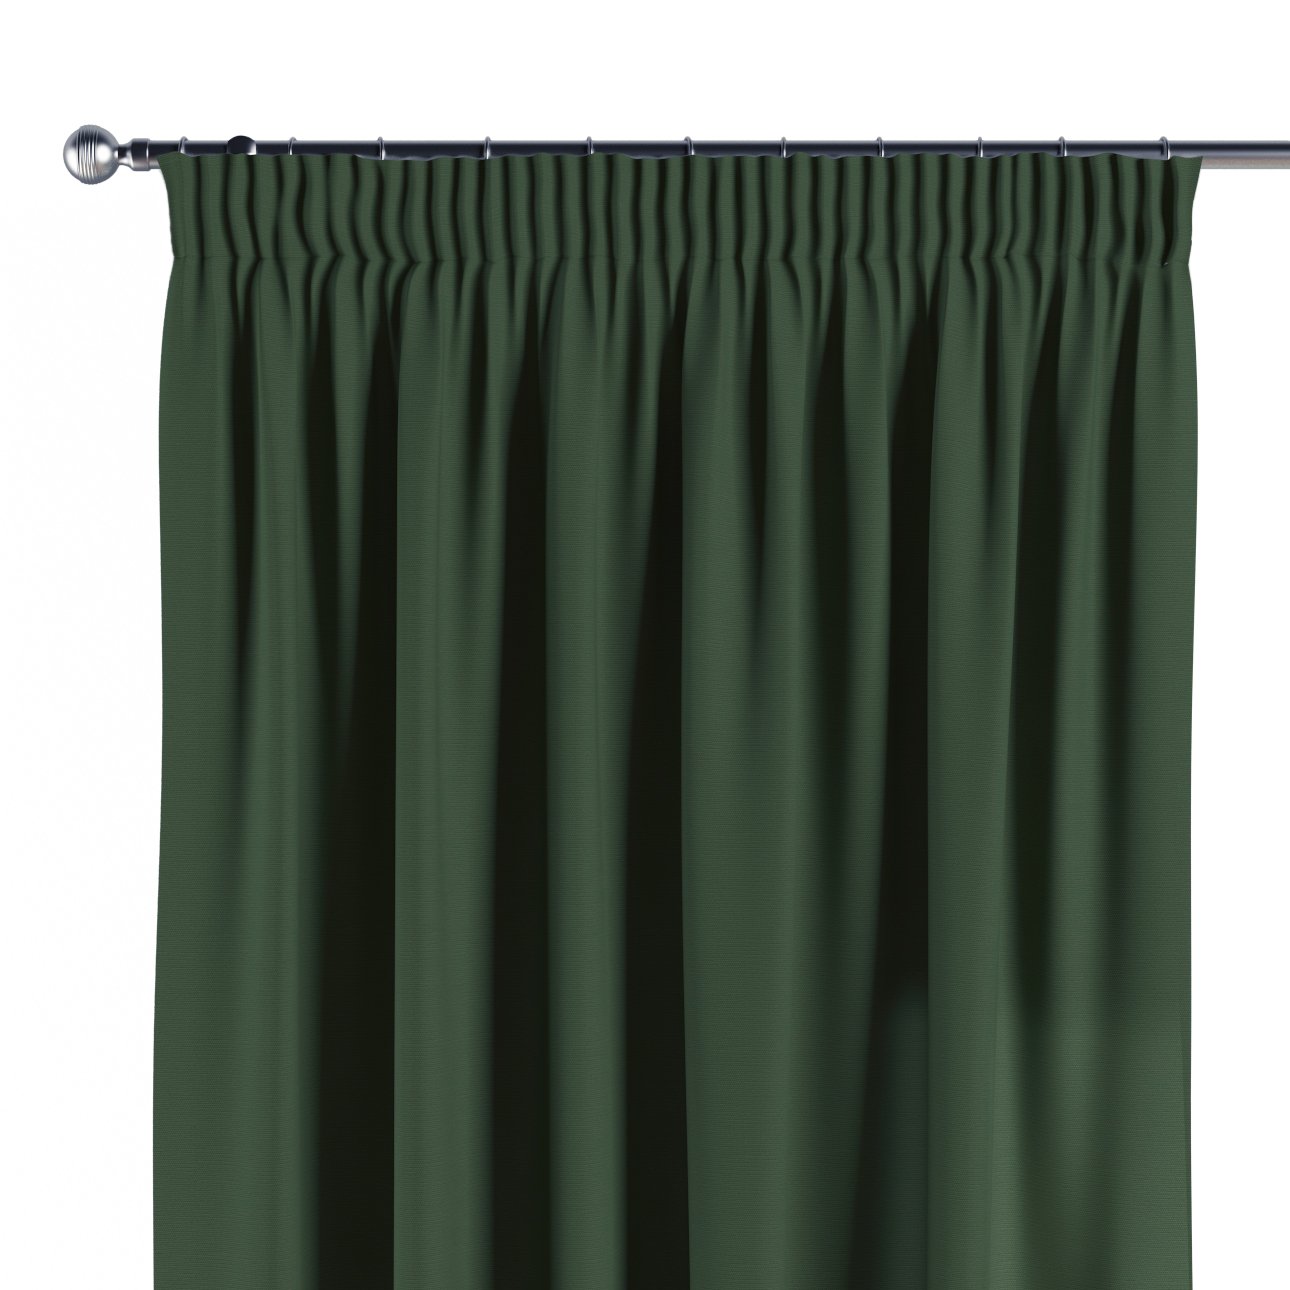 Vorhang mit Kräuselband, waldgrün, 702-06